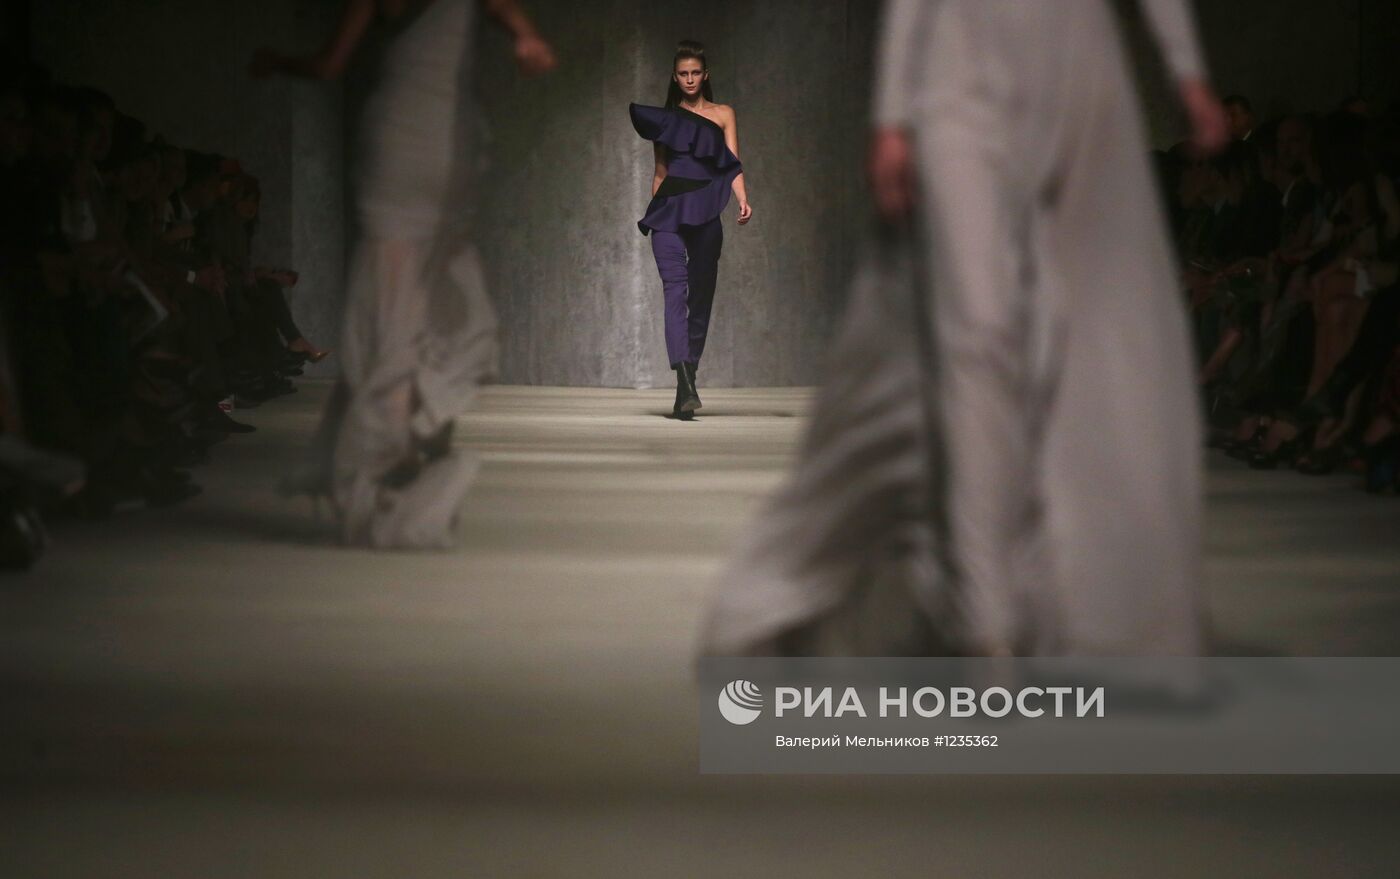 Юбилейный показ коллекции Haute Couture 2013 Игоря Чапурина